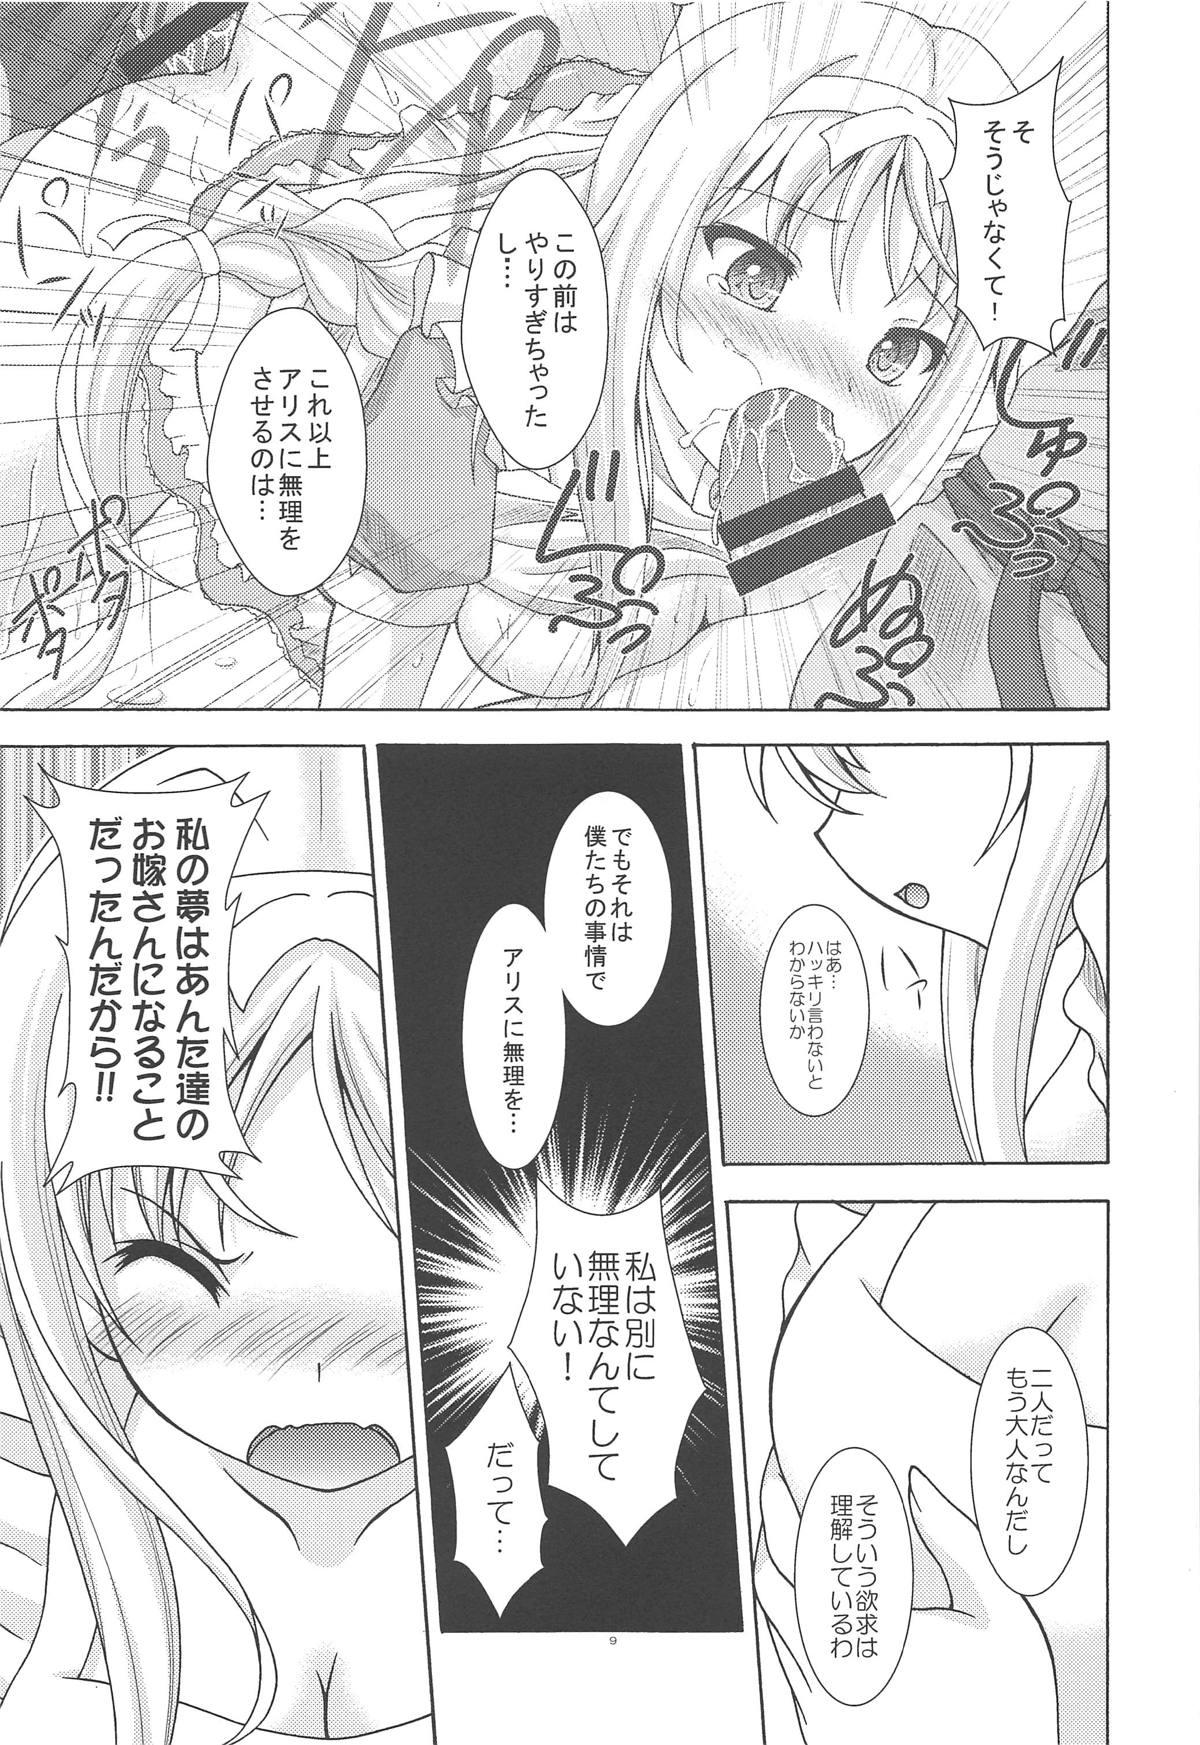 Cavalgando Yume no Kuni no Alice - Sword art online Blowjob - Page 8